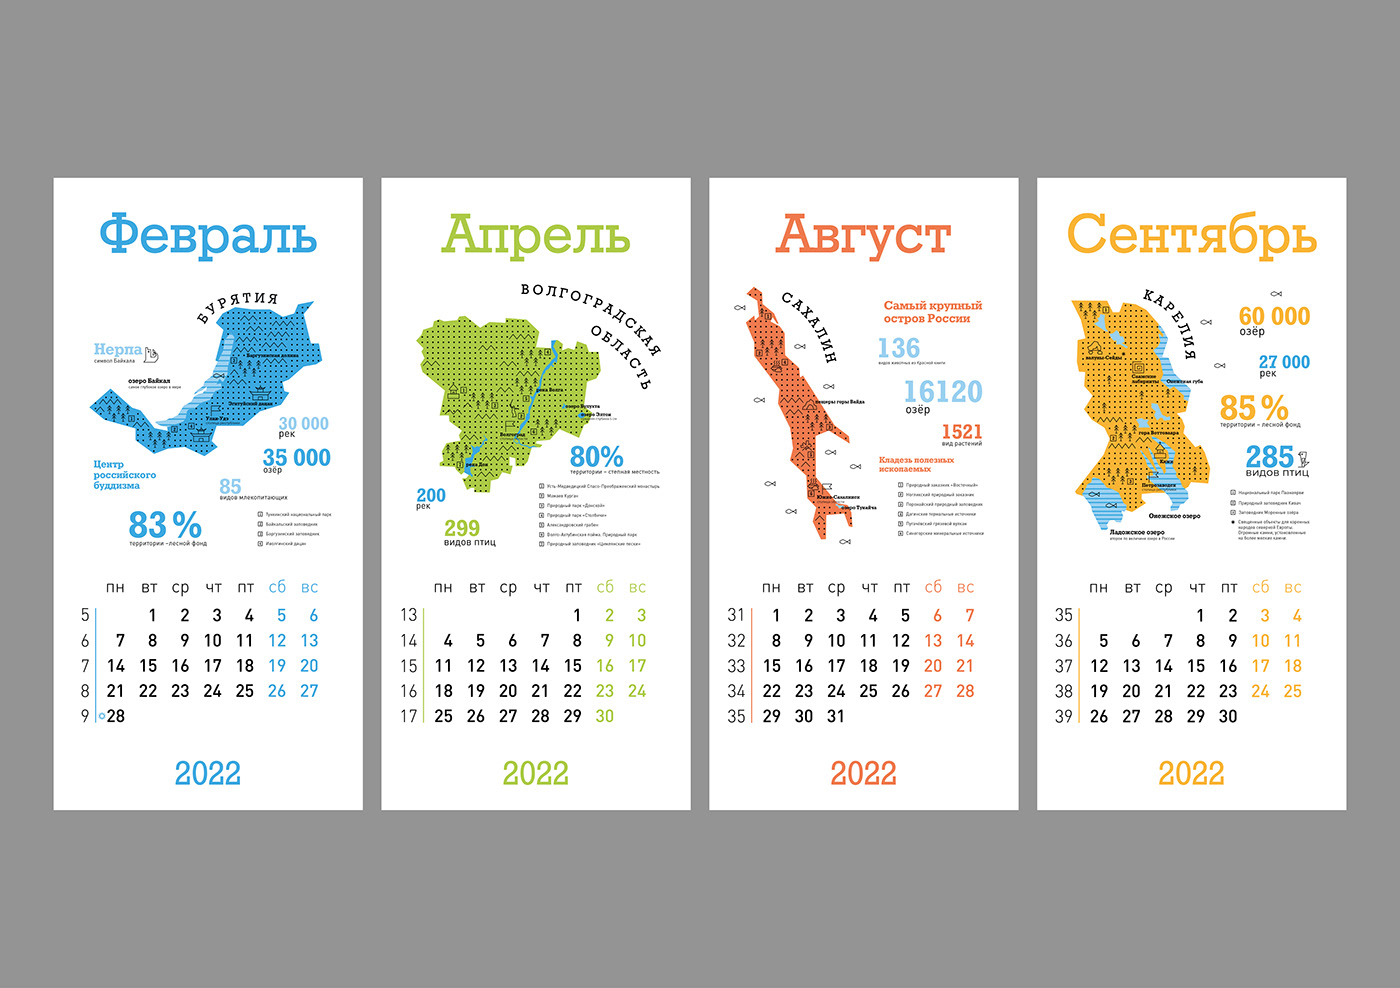 2022 Calendar calendar design graphic design  infographic инфографика календарь календарь 2022 Россия